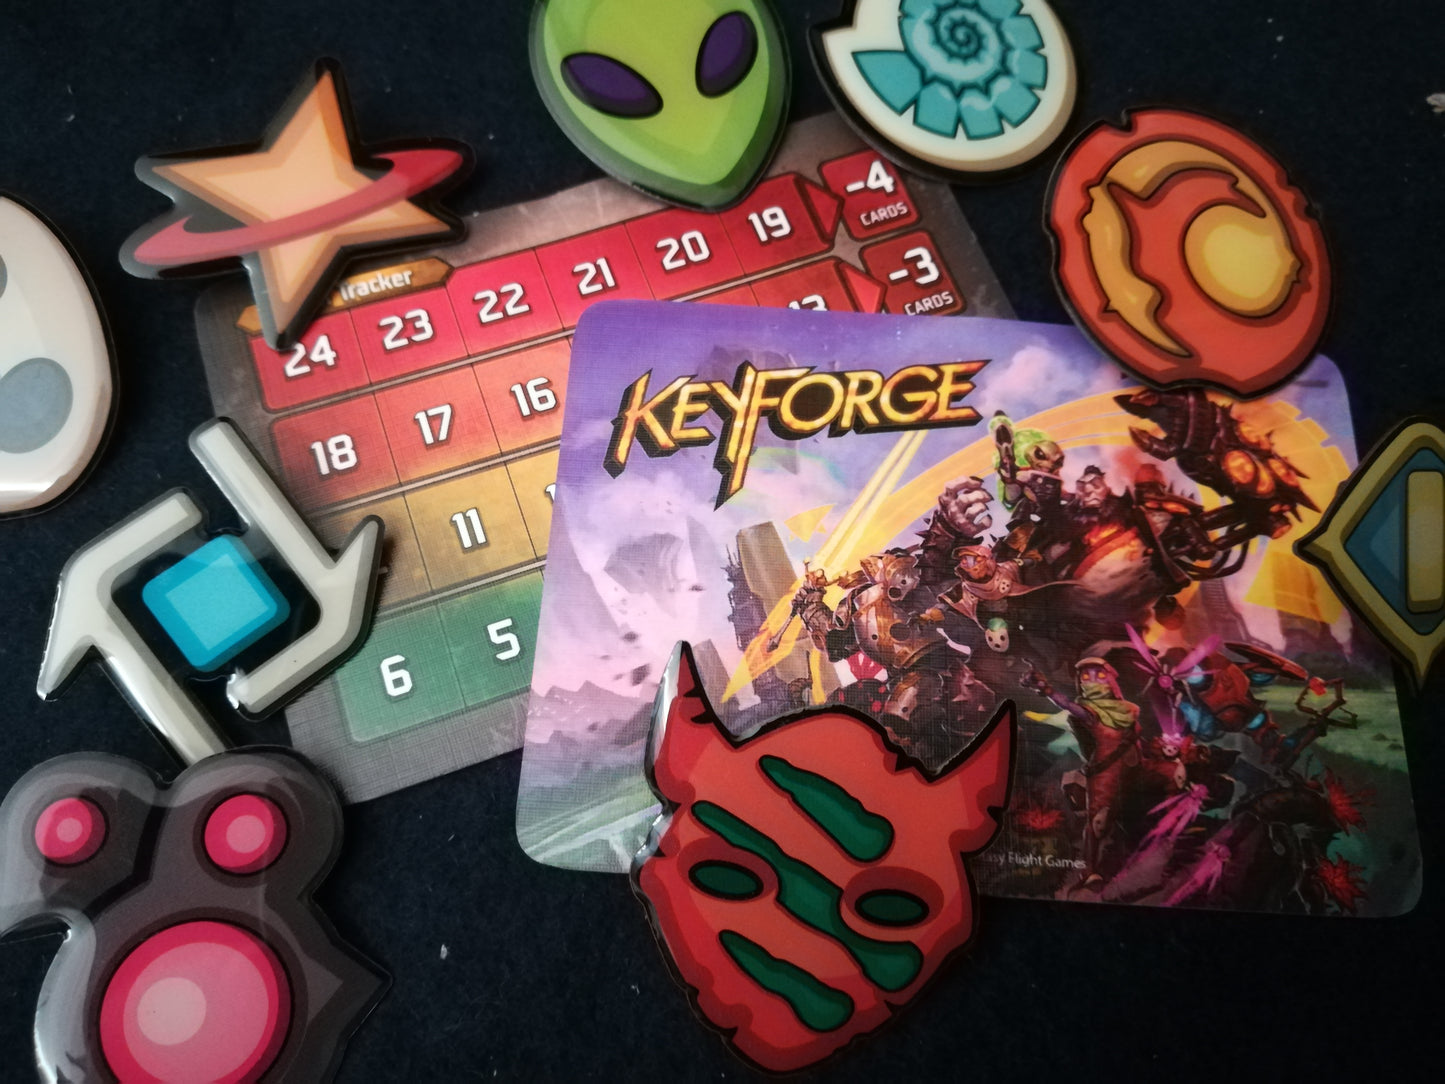 SET completo 9 spille ufficiali delle case di Keyforge (9 pins)